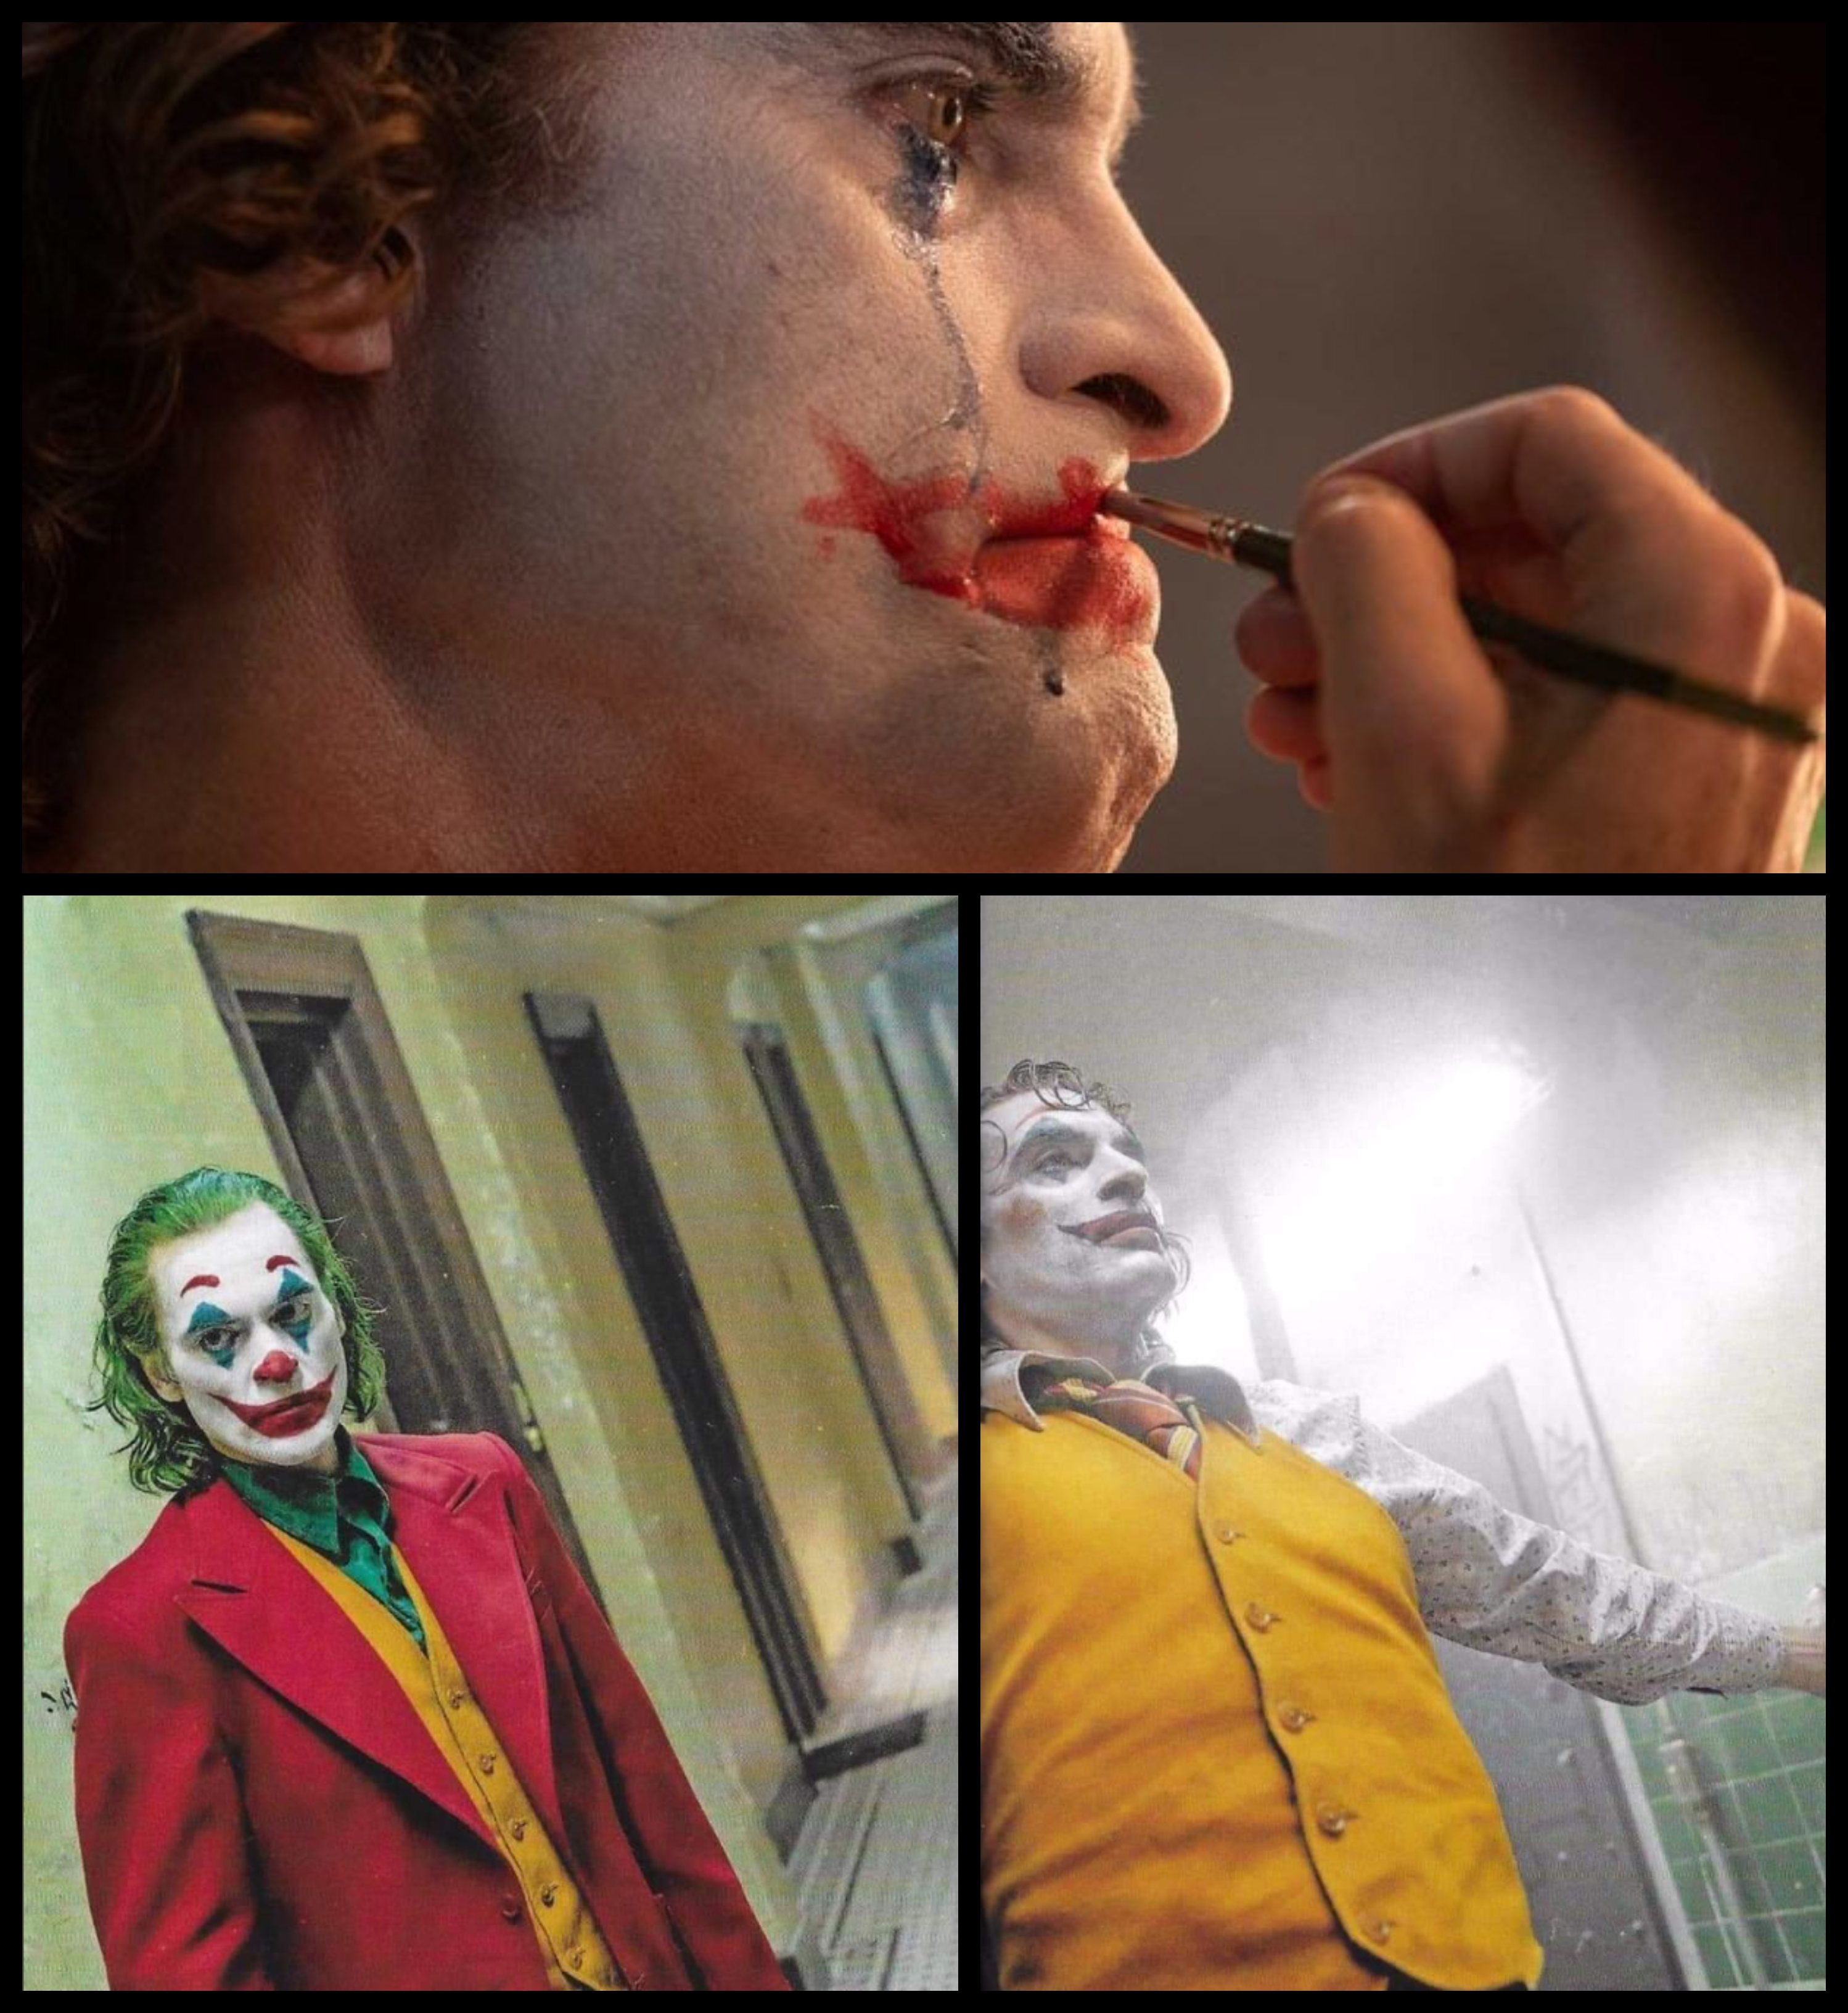 The-Joker.jpg